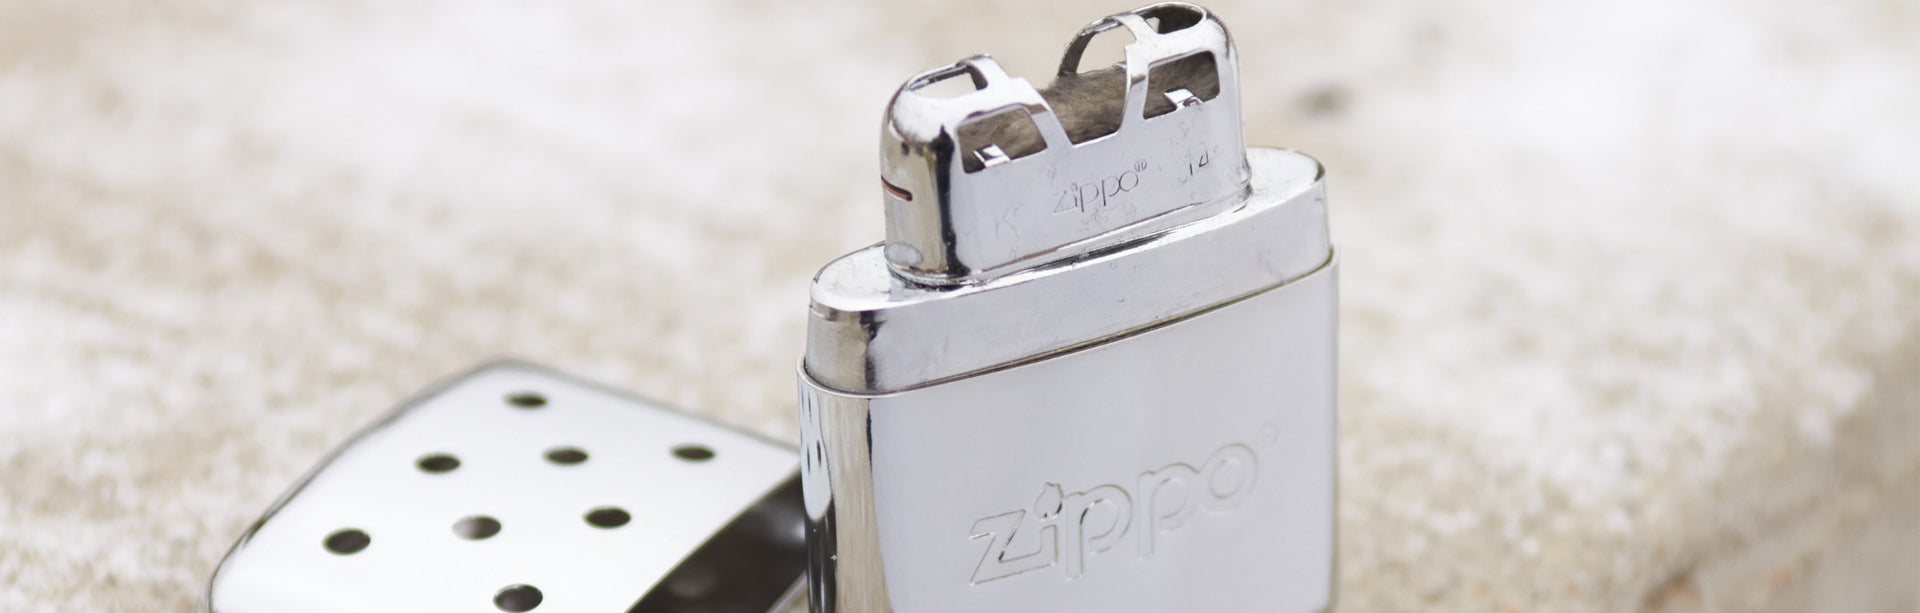 Official Zippo Spain Shop